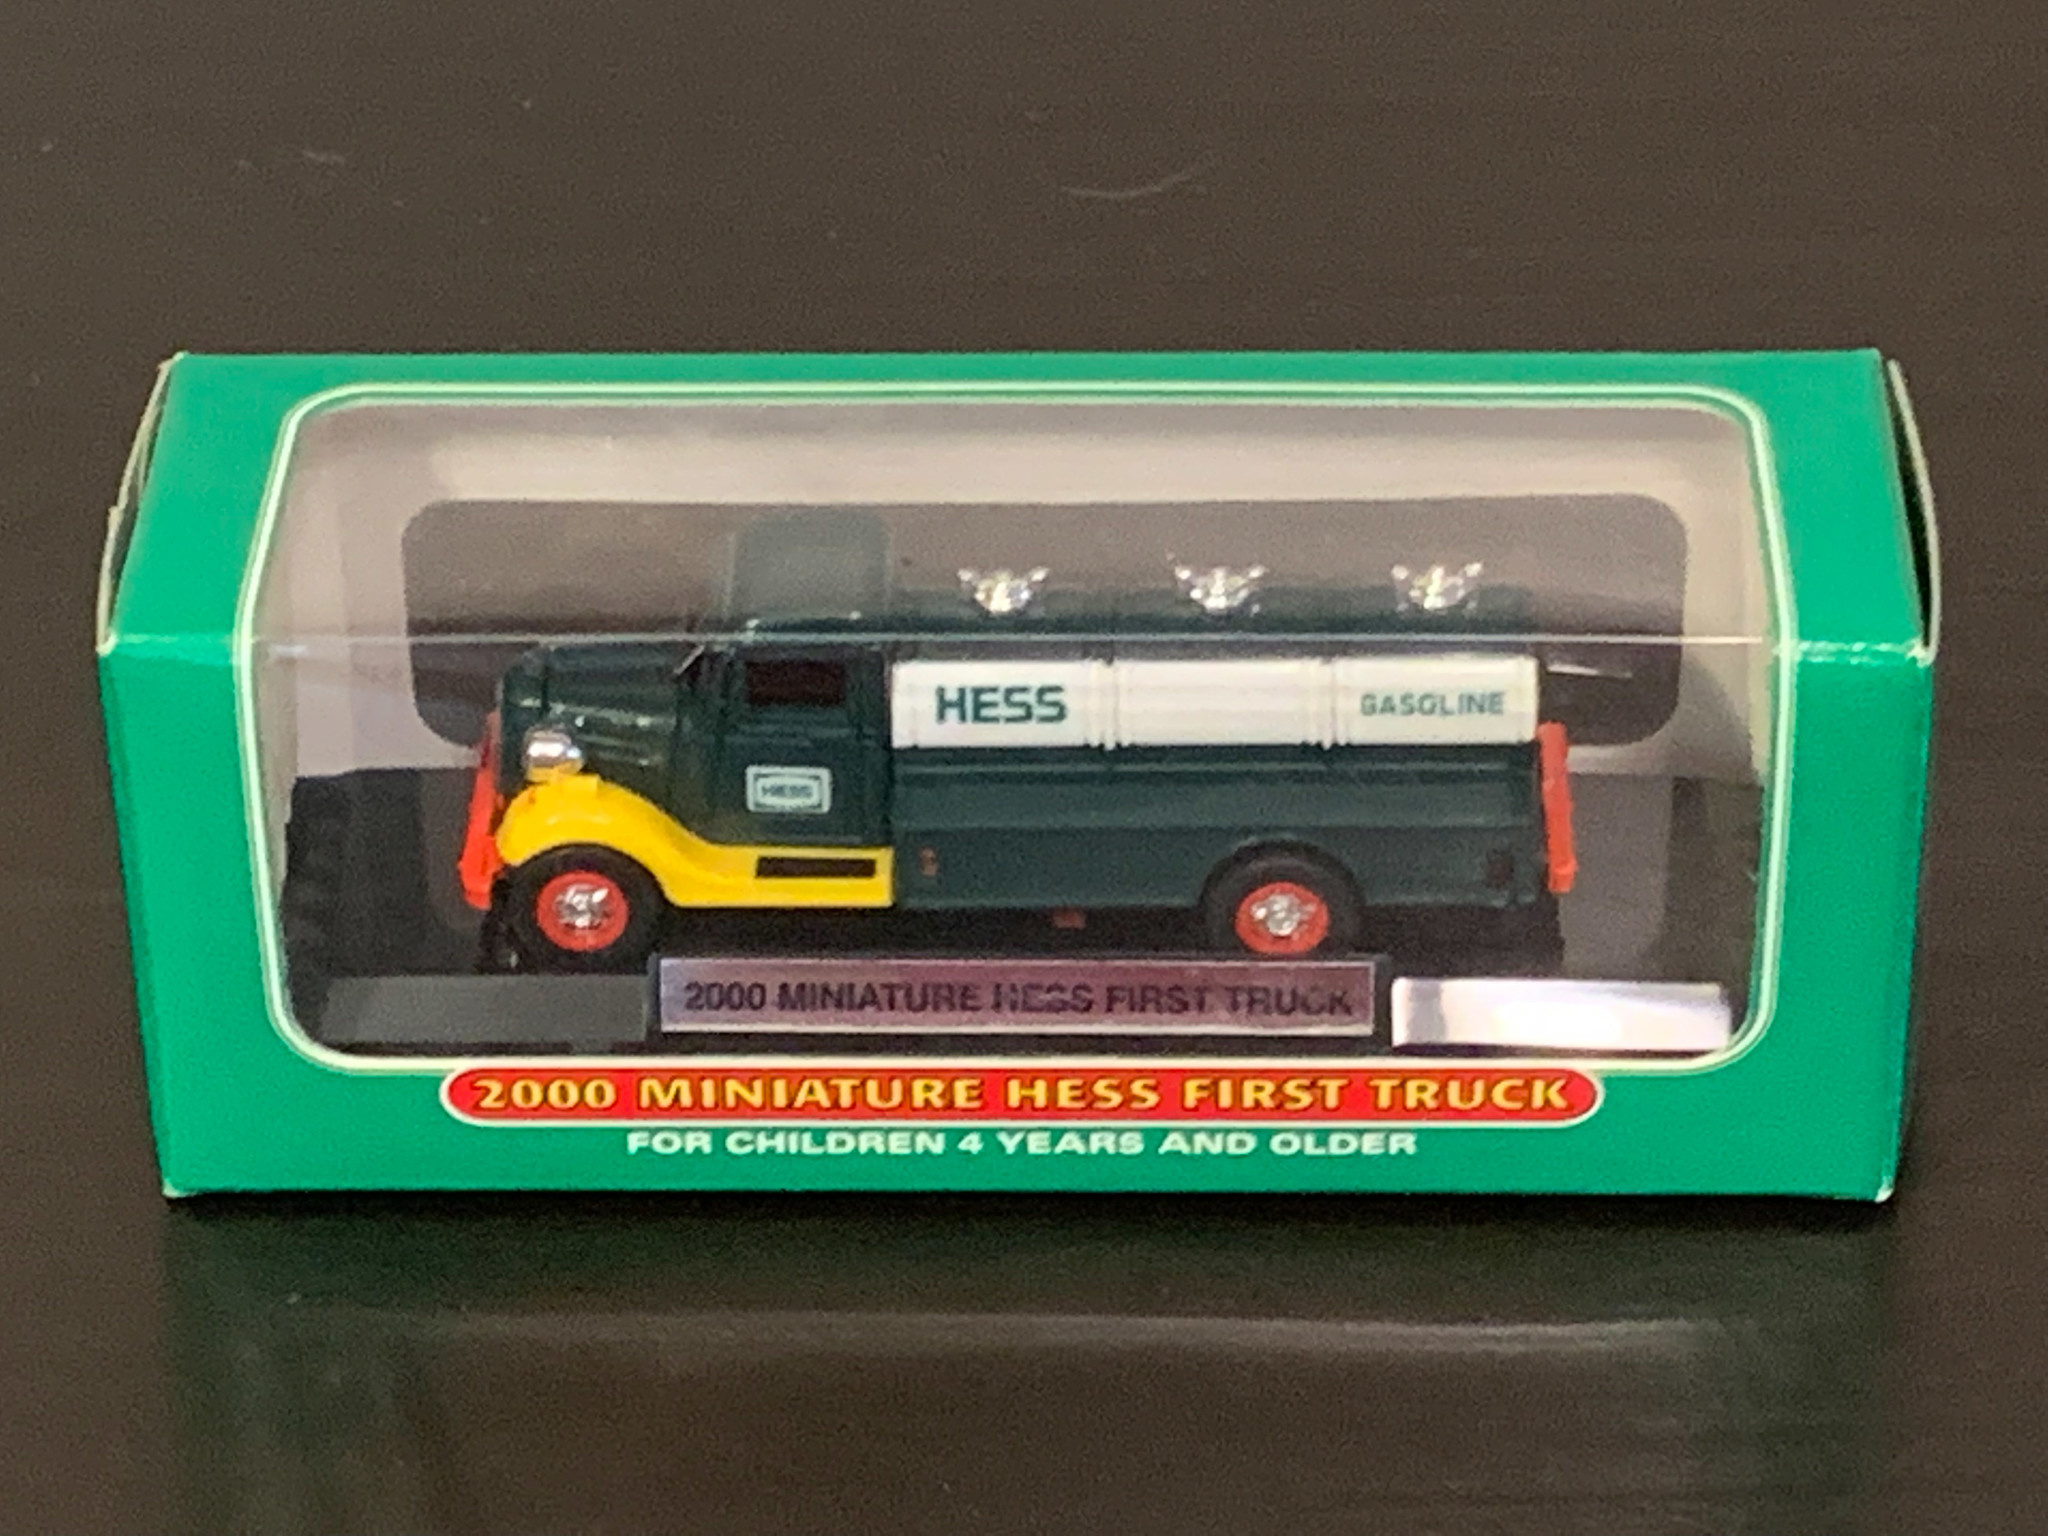 HESS 2000 Miniature Hess First Truck